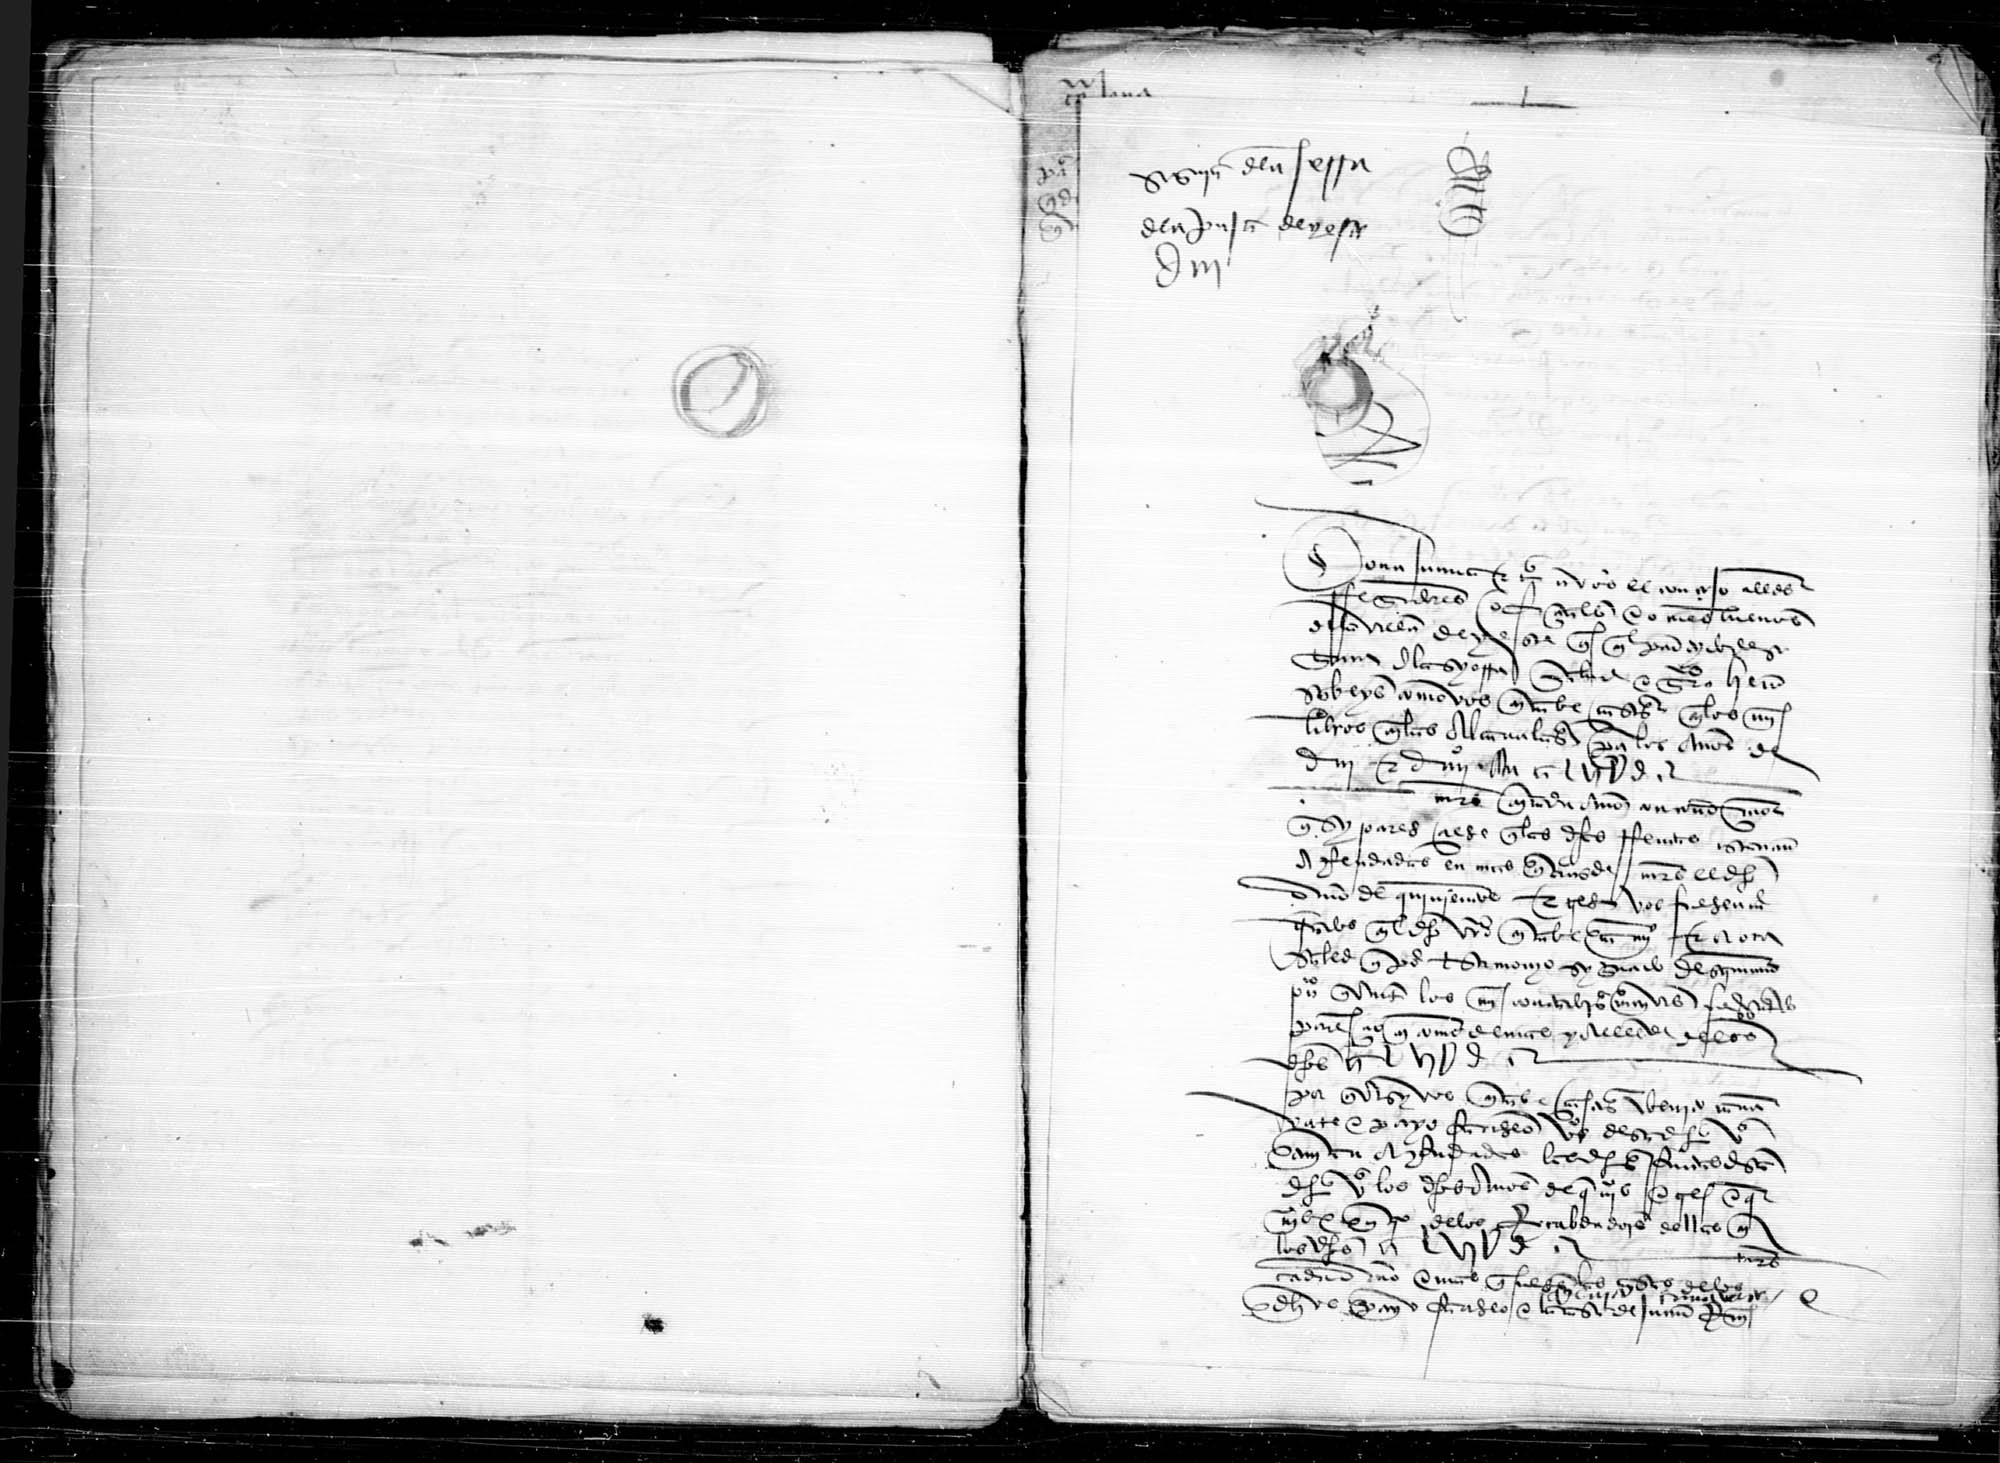 Carta de Juana I al concejo de Yeste, partido de Segura, para que abone cierta cantidad de la renta de las alcabalas de los años 1503-1505, que estaban por arrendamiento y ahora se encabezaron.